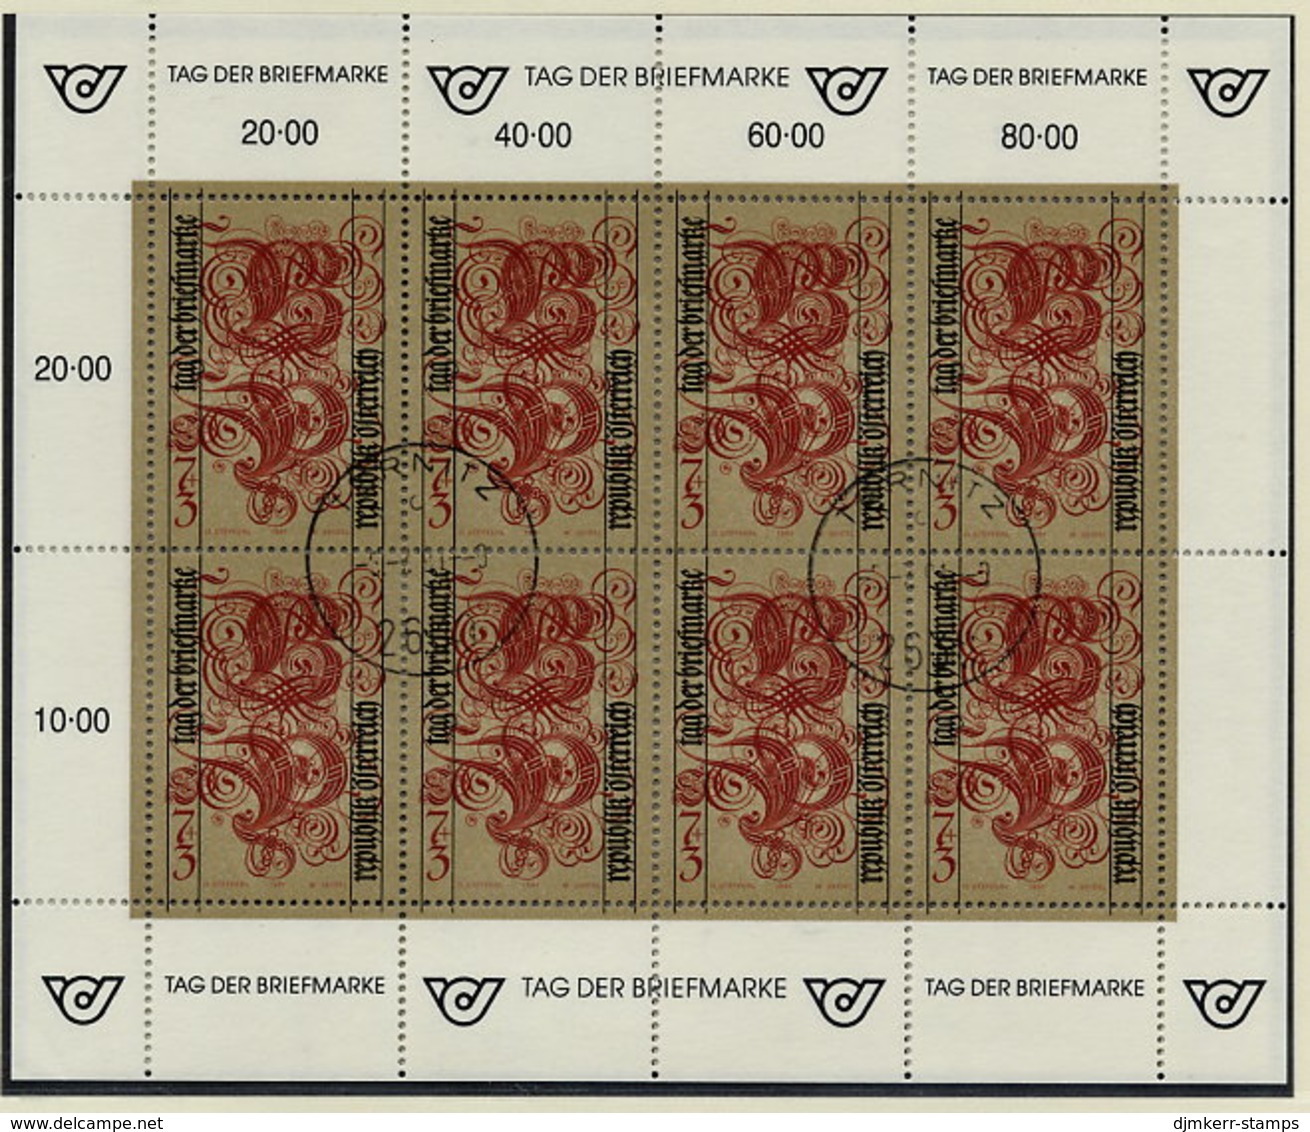 AUSTRIA 1991 Stamp Day Sheetlet, Postally Used On Registered Card.  Michel 2032 Kb - Blocks & Sheetlets & Panes